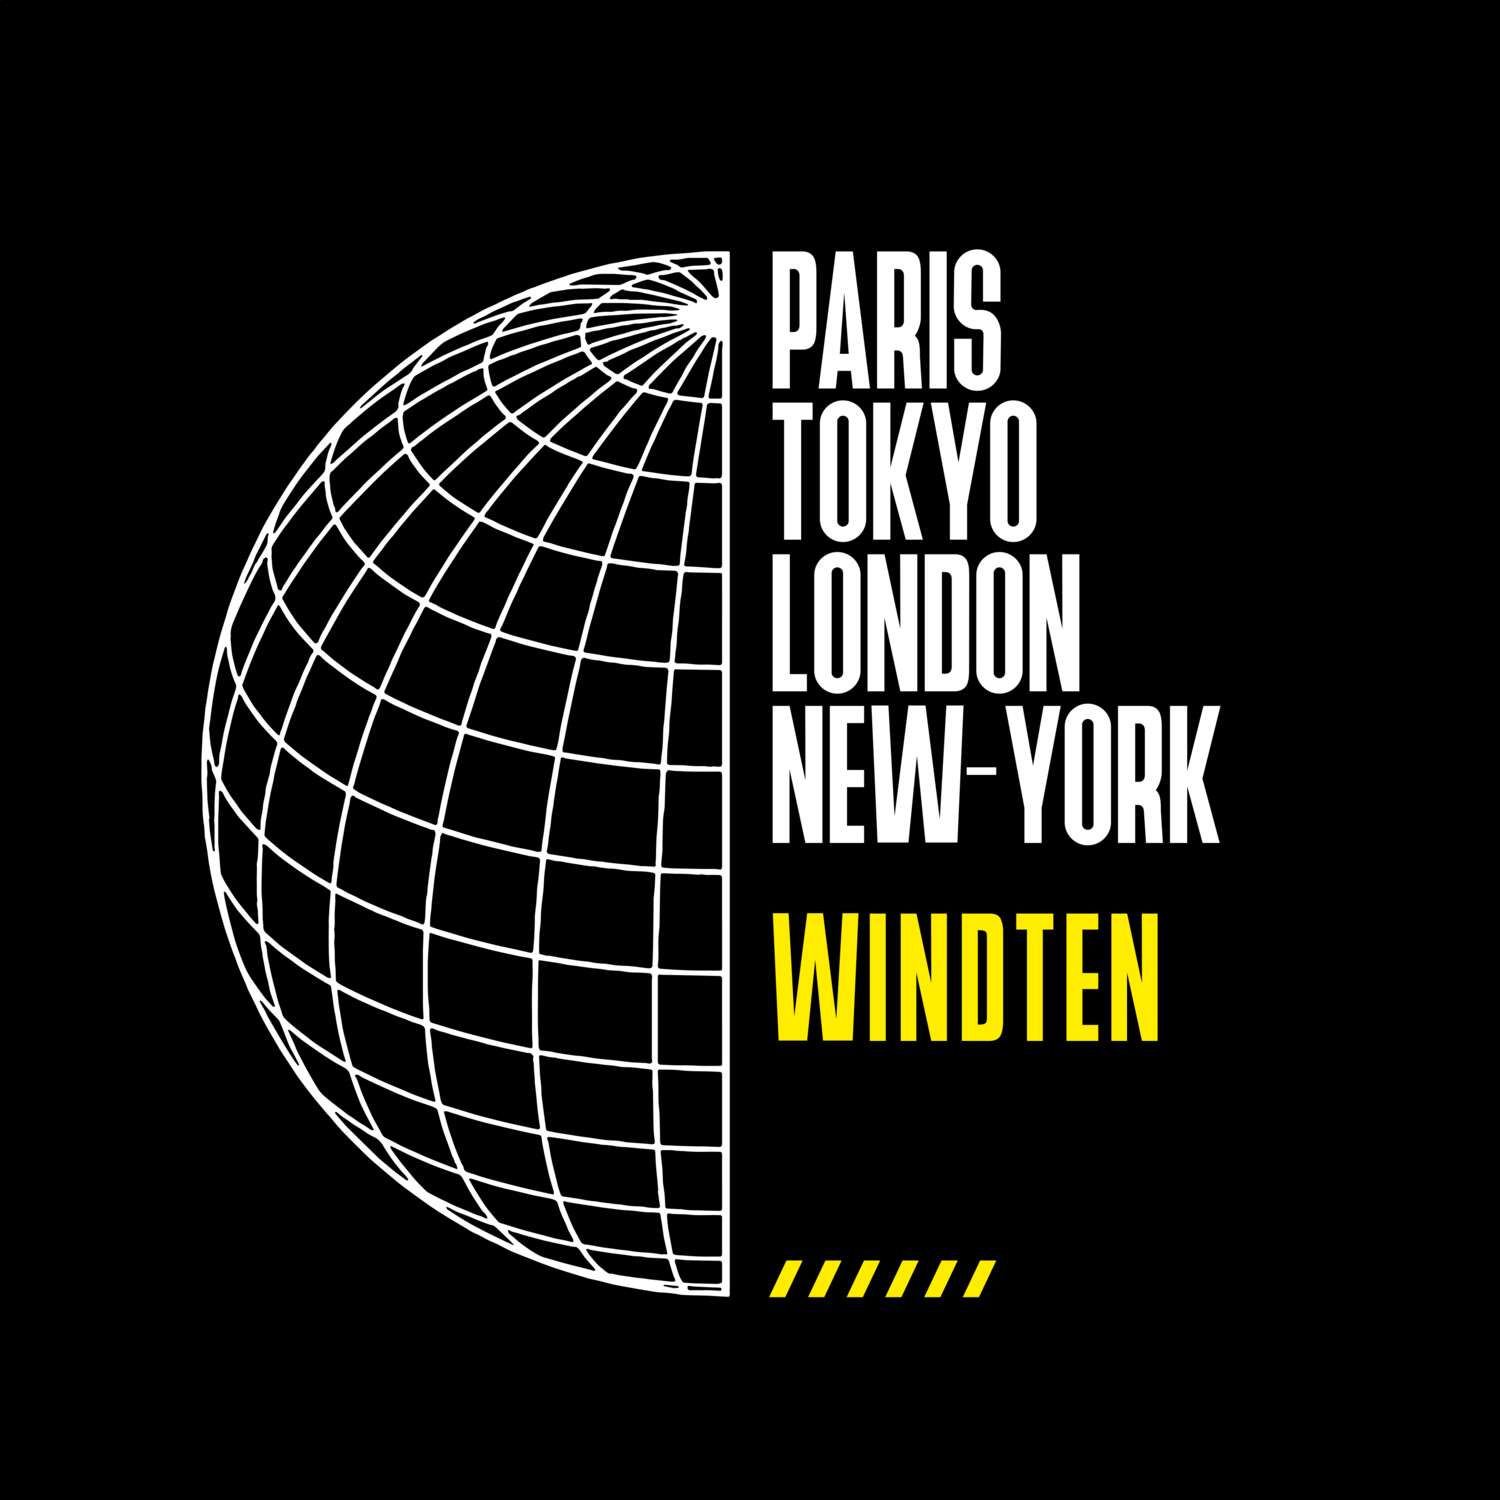 Windten T-Shirt »Paris Tokyo London«